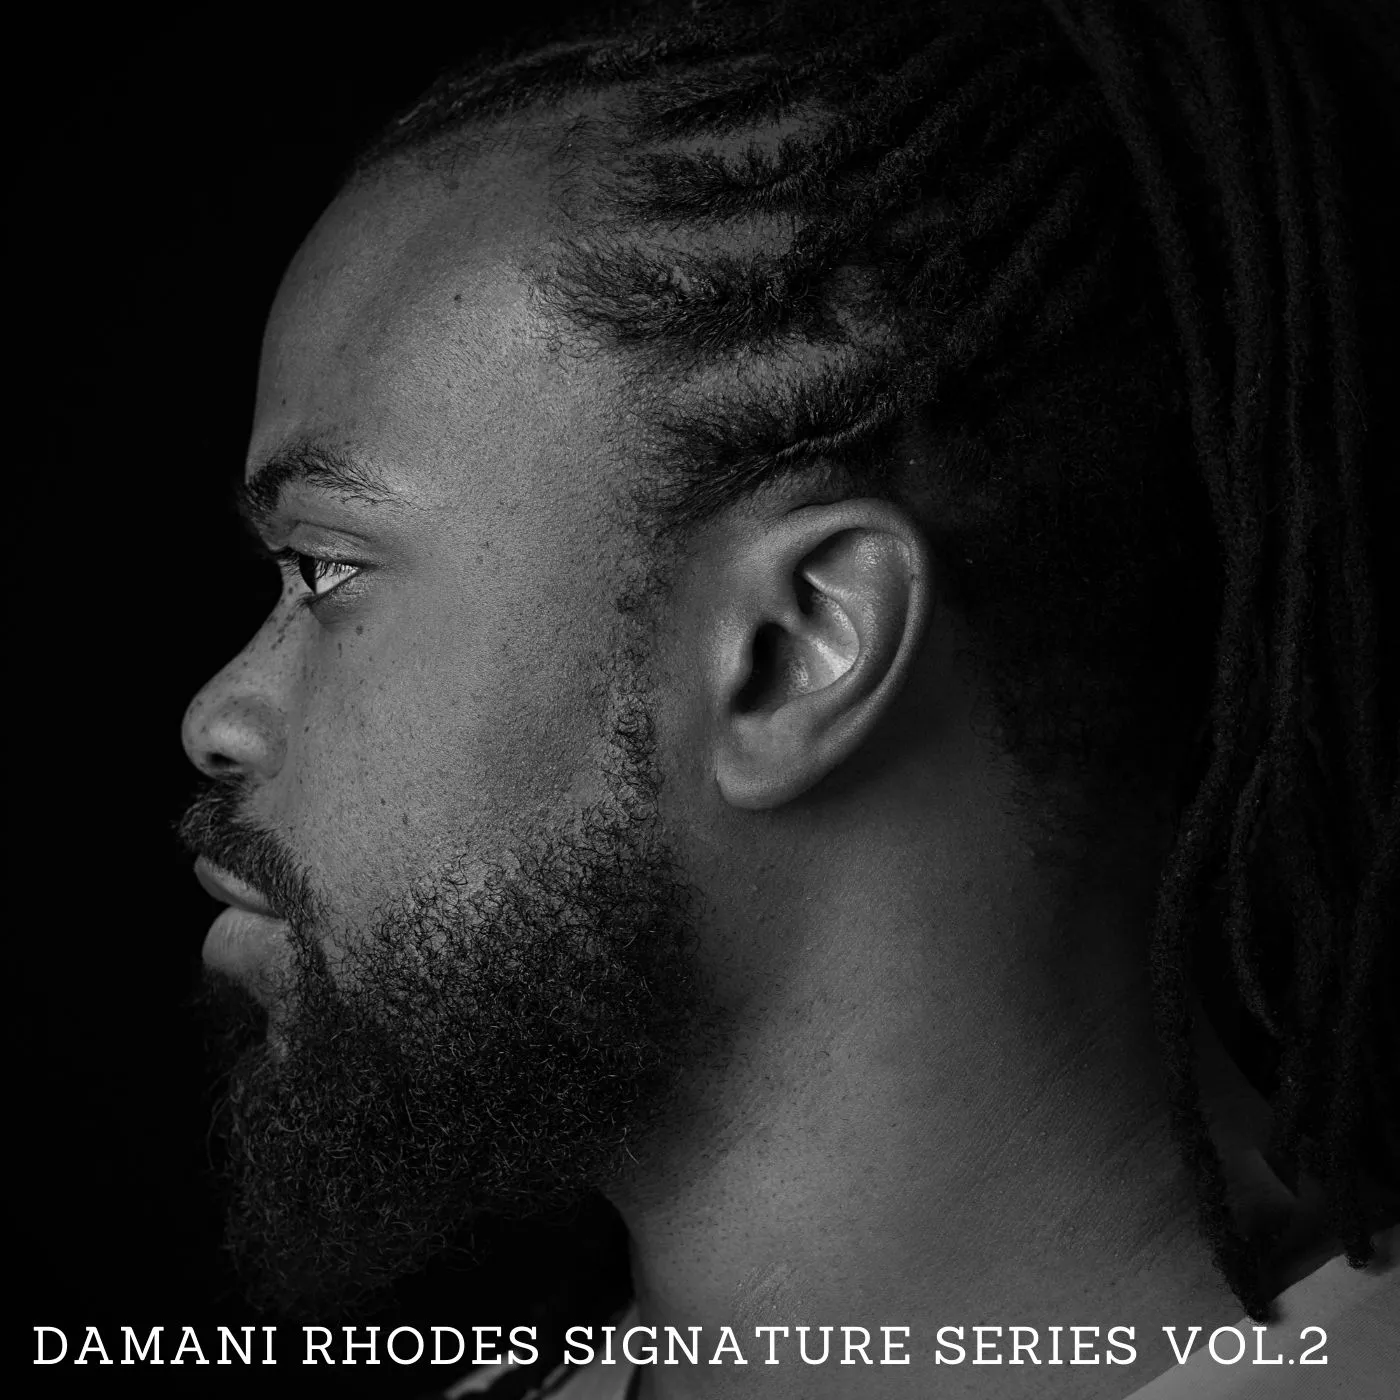 Damani Rhodes Signature Series Vol. 2